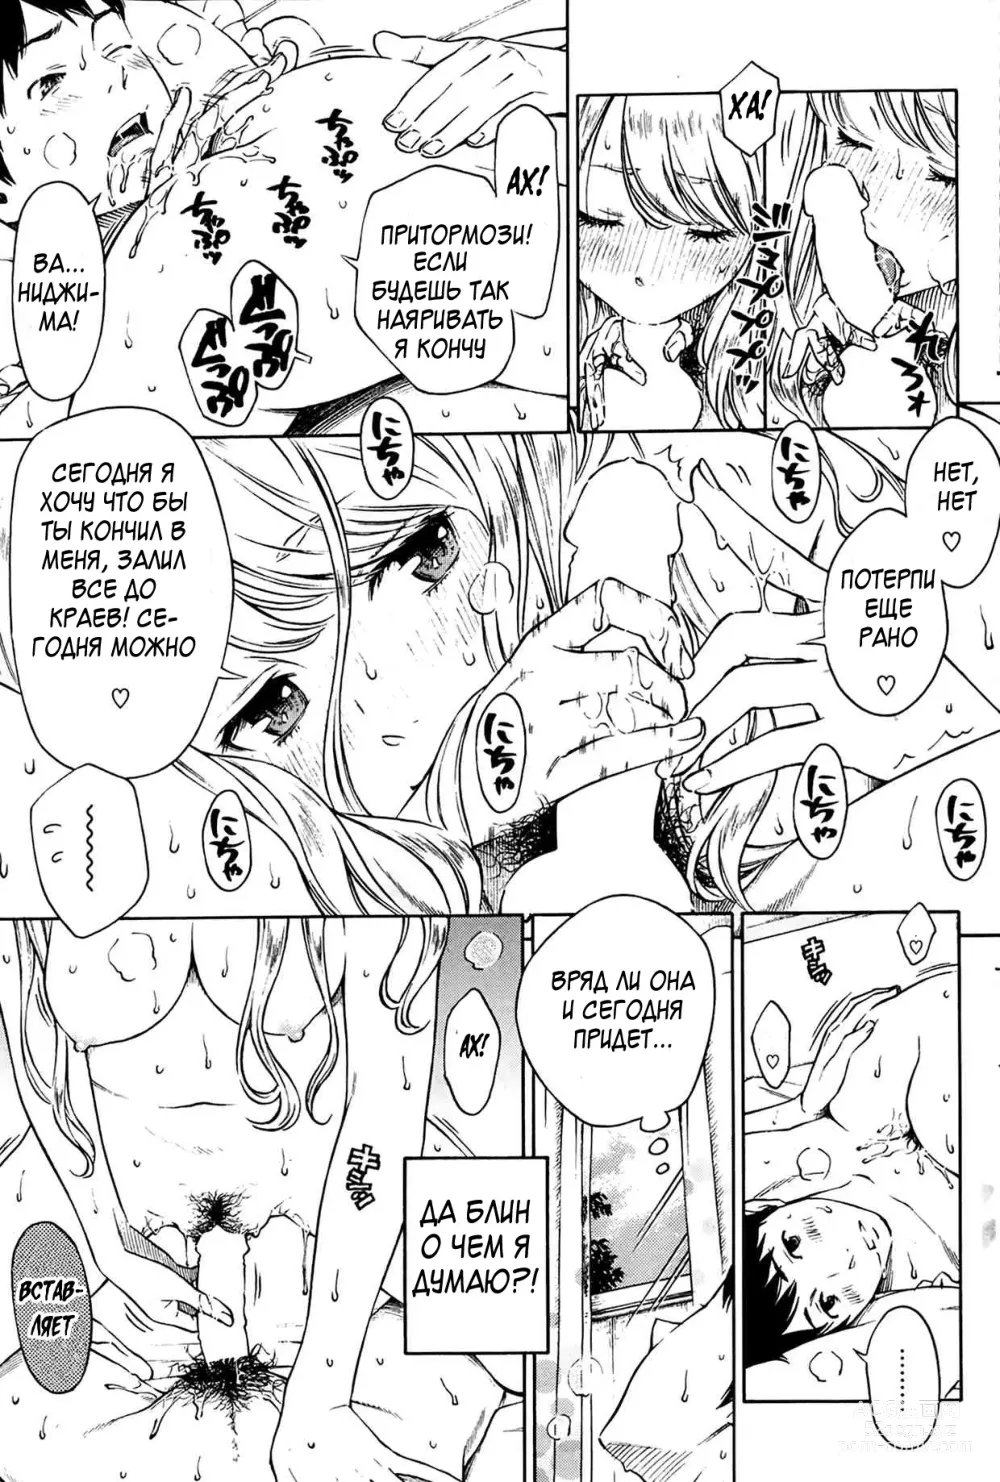 Page 5 of manga Хитоми